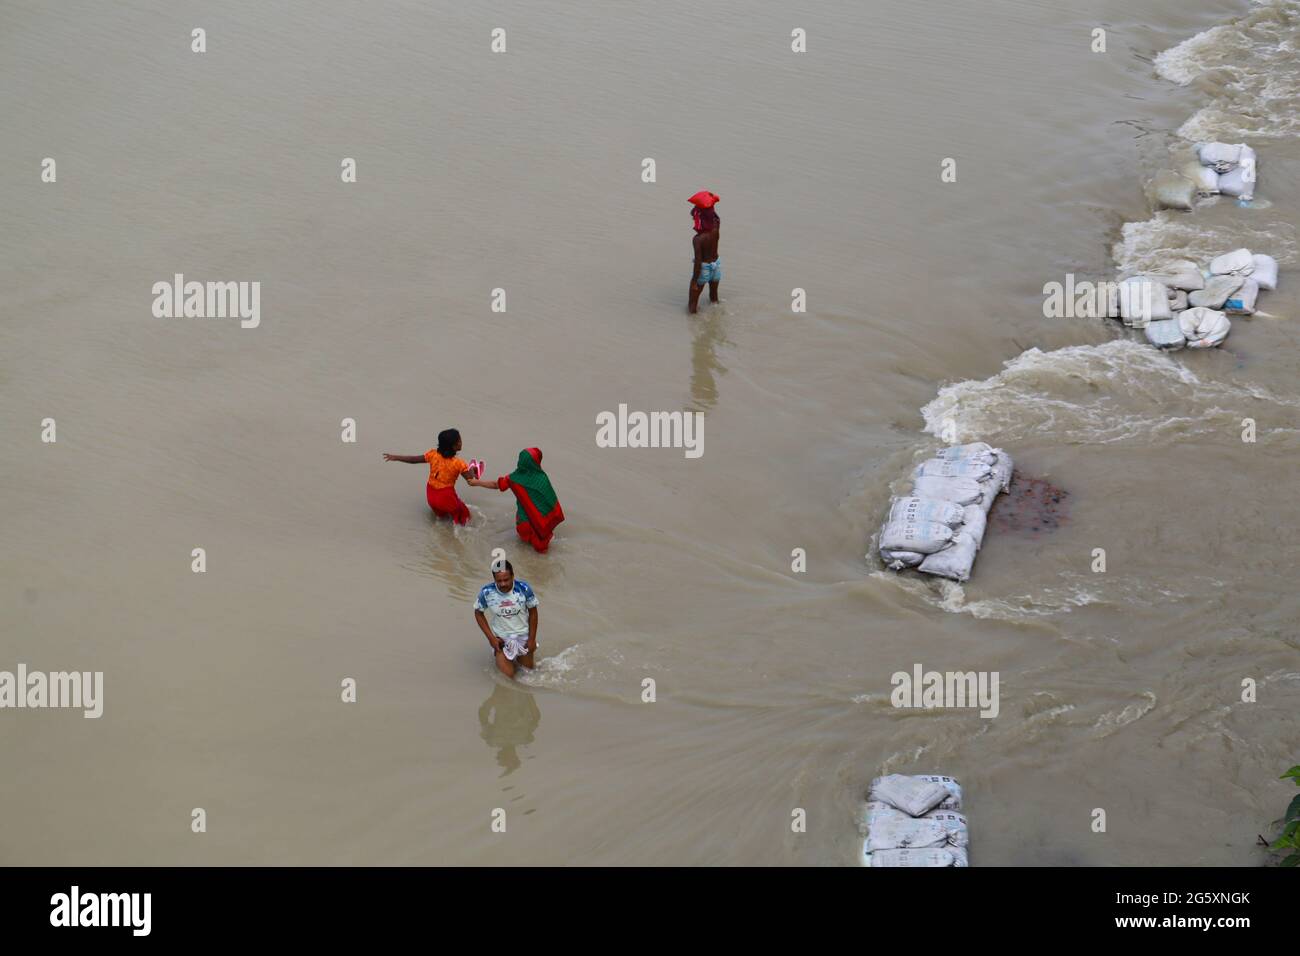 Les gens traversent les eaux de crue lors de l'inondation de la mousson à Munshiganj, près de Dhaka, au Bangladesh, le 28 juillet 2020. Plus de 9.6 millions de personnes ont été touchées par des inondations dues à la mousson, qui ont dévasté de vastes régions de l'Inde, du Bangladesh et du Népal. Banque D'Images